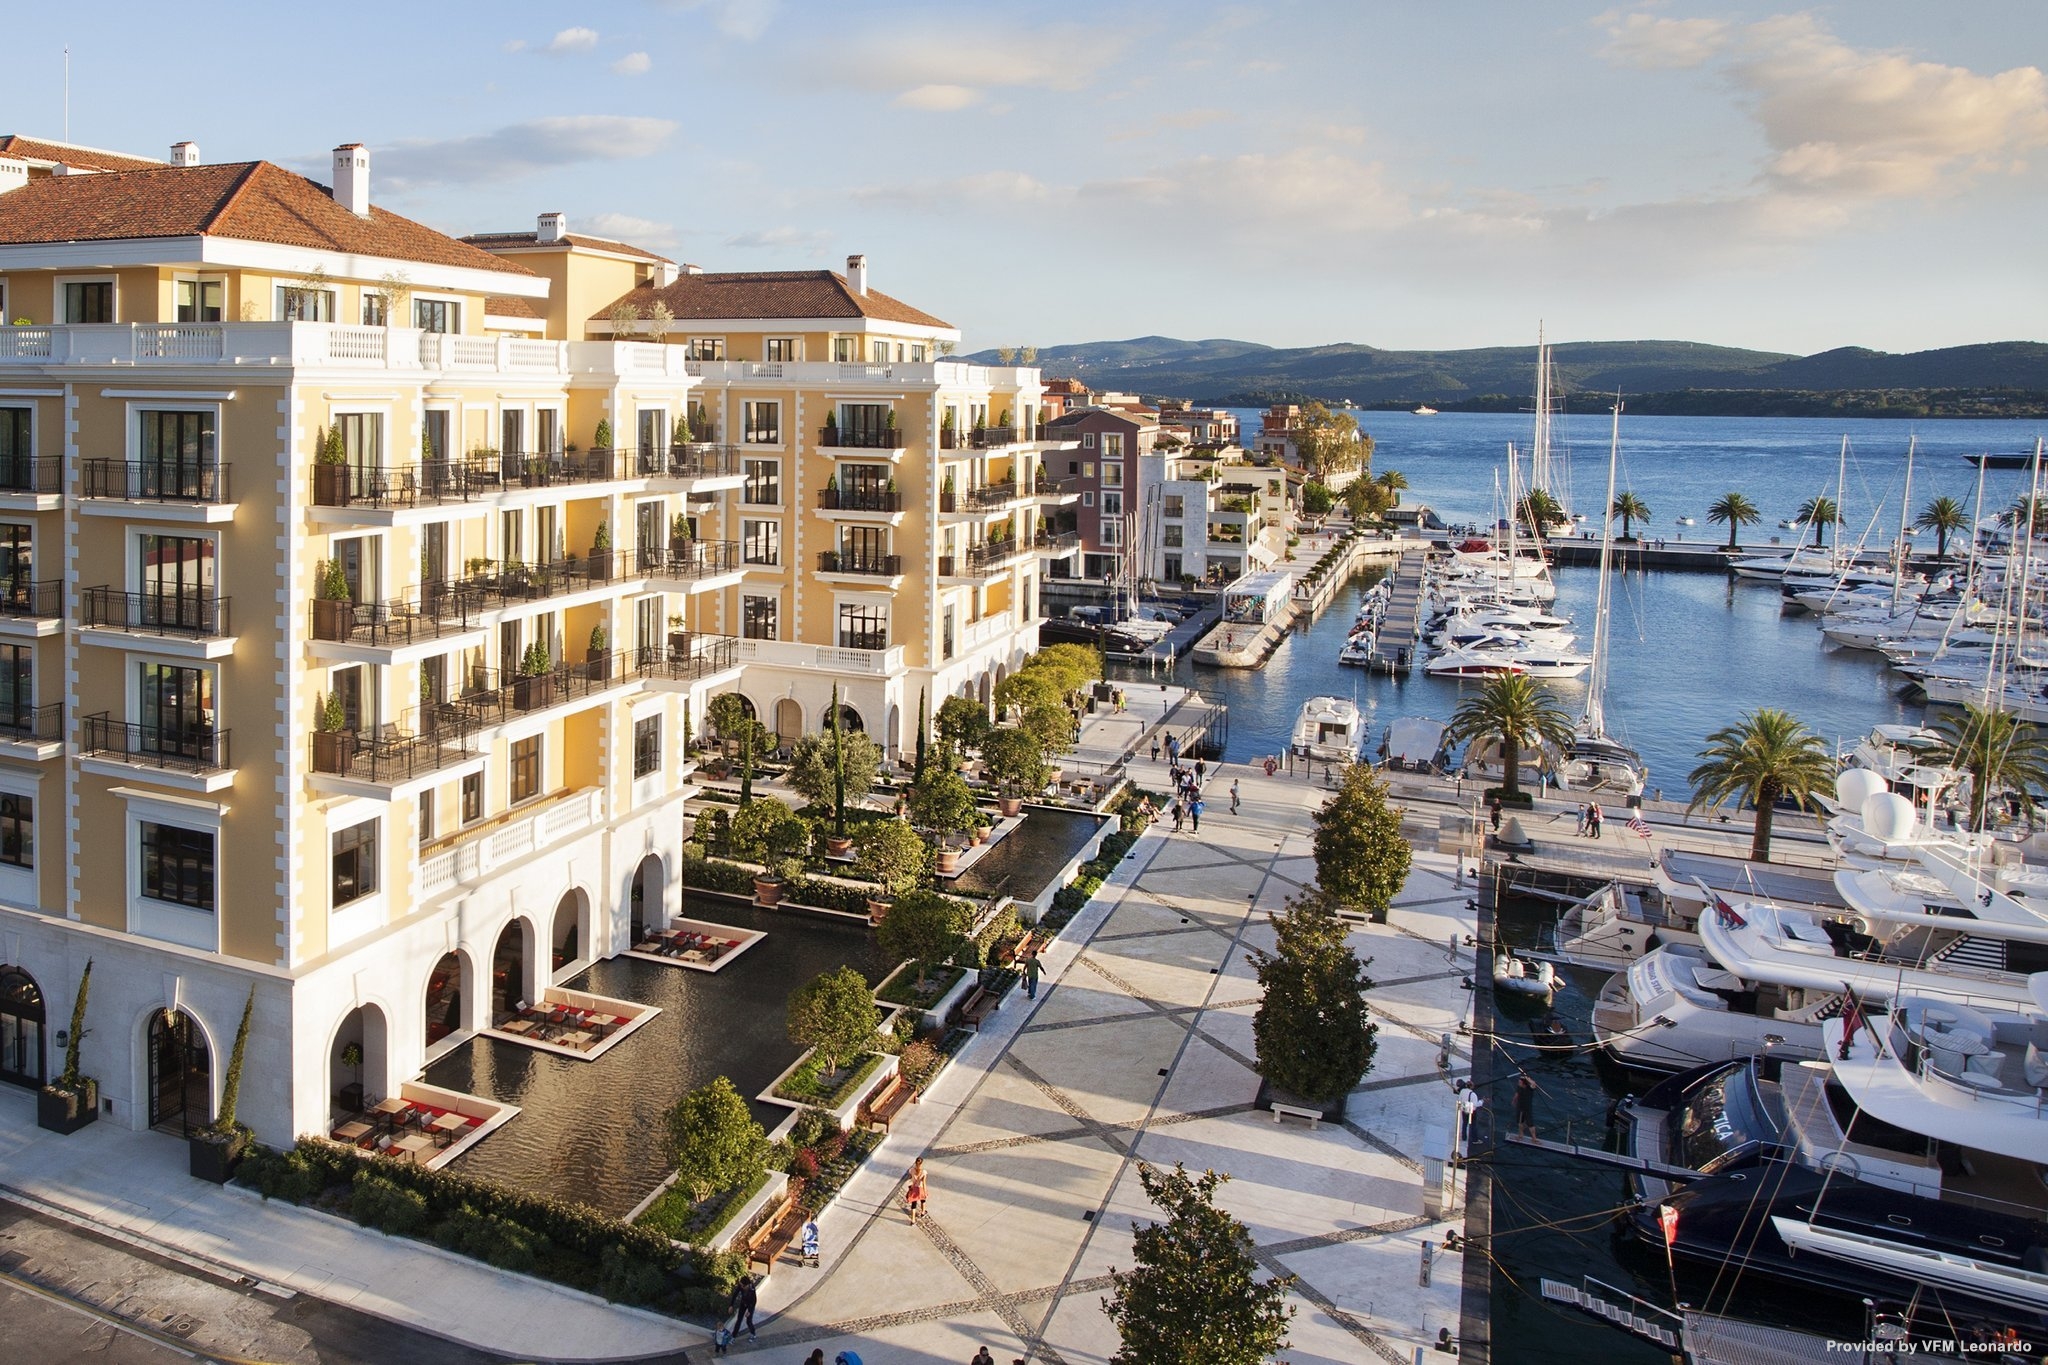 Nejlepší luxusní hotely v Černé Hoře 2